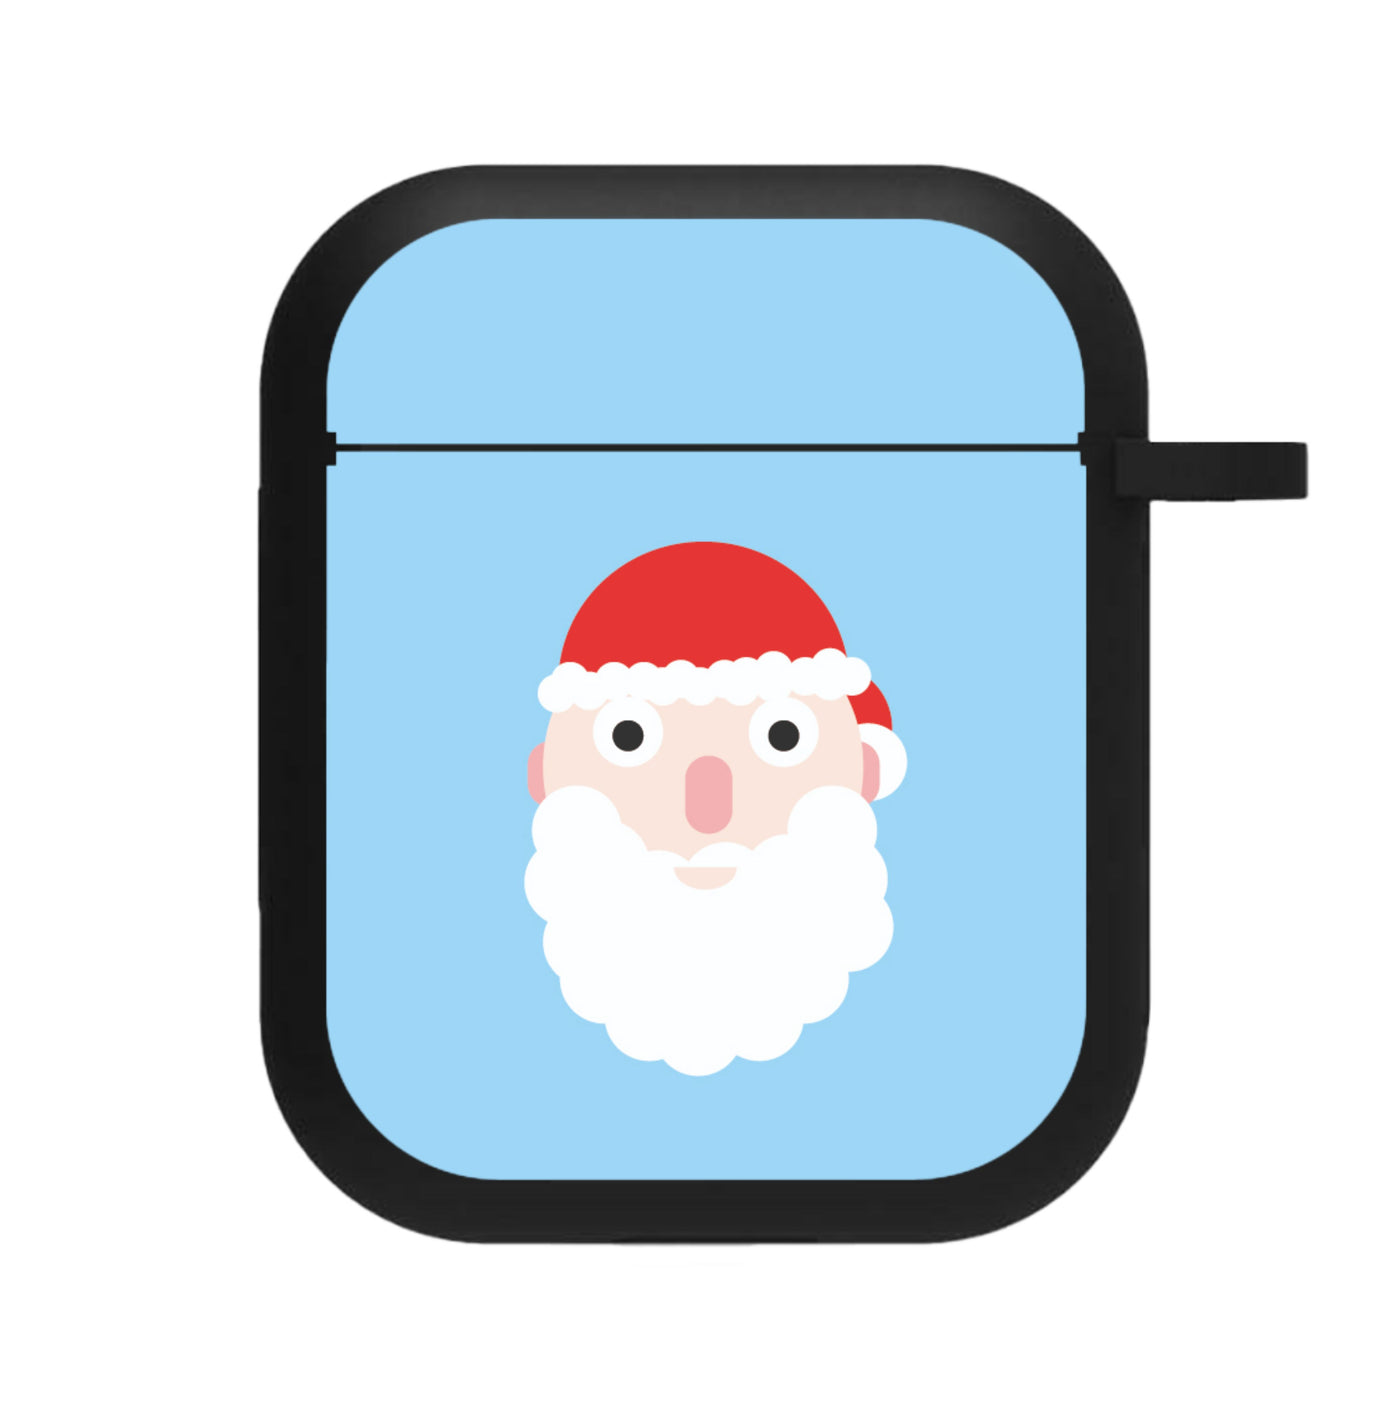 Santa's Face - Christmas AirPods Case